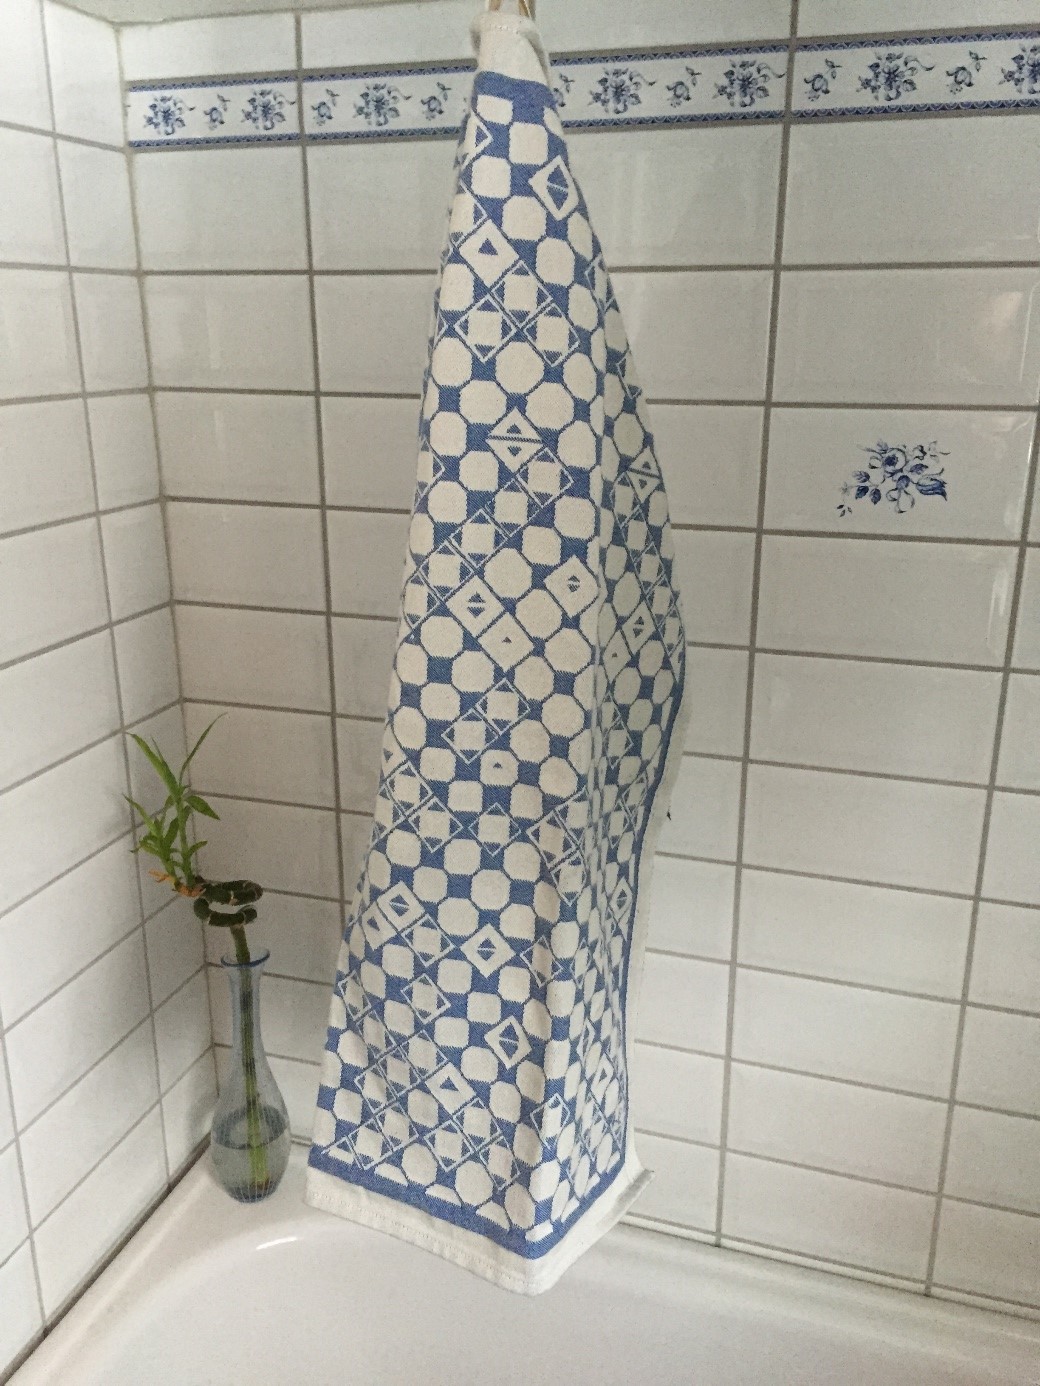 Bordsduk Marsfjällsnåjdens mönster i design av Doris och Sven-Åke Risfjell. Här i blå färgställning.